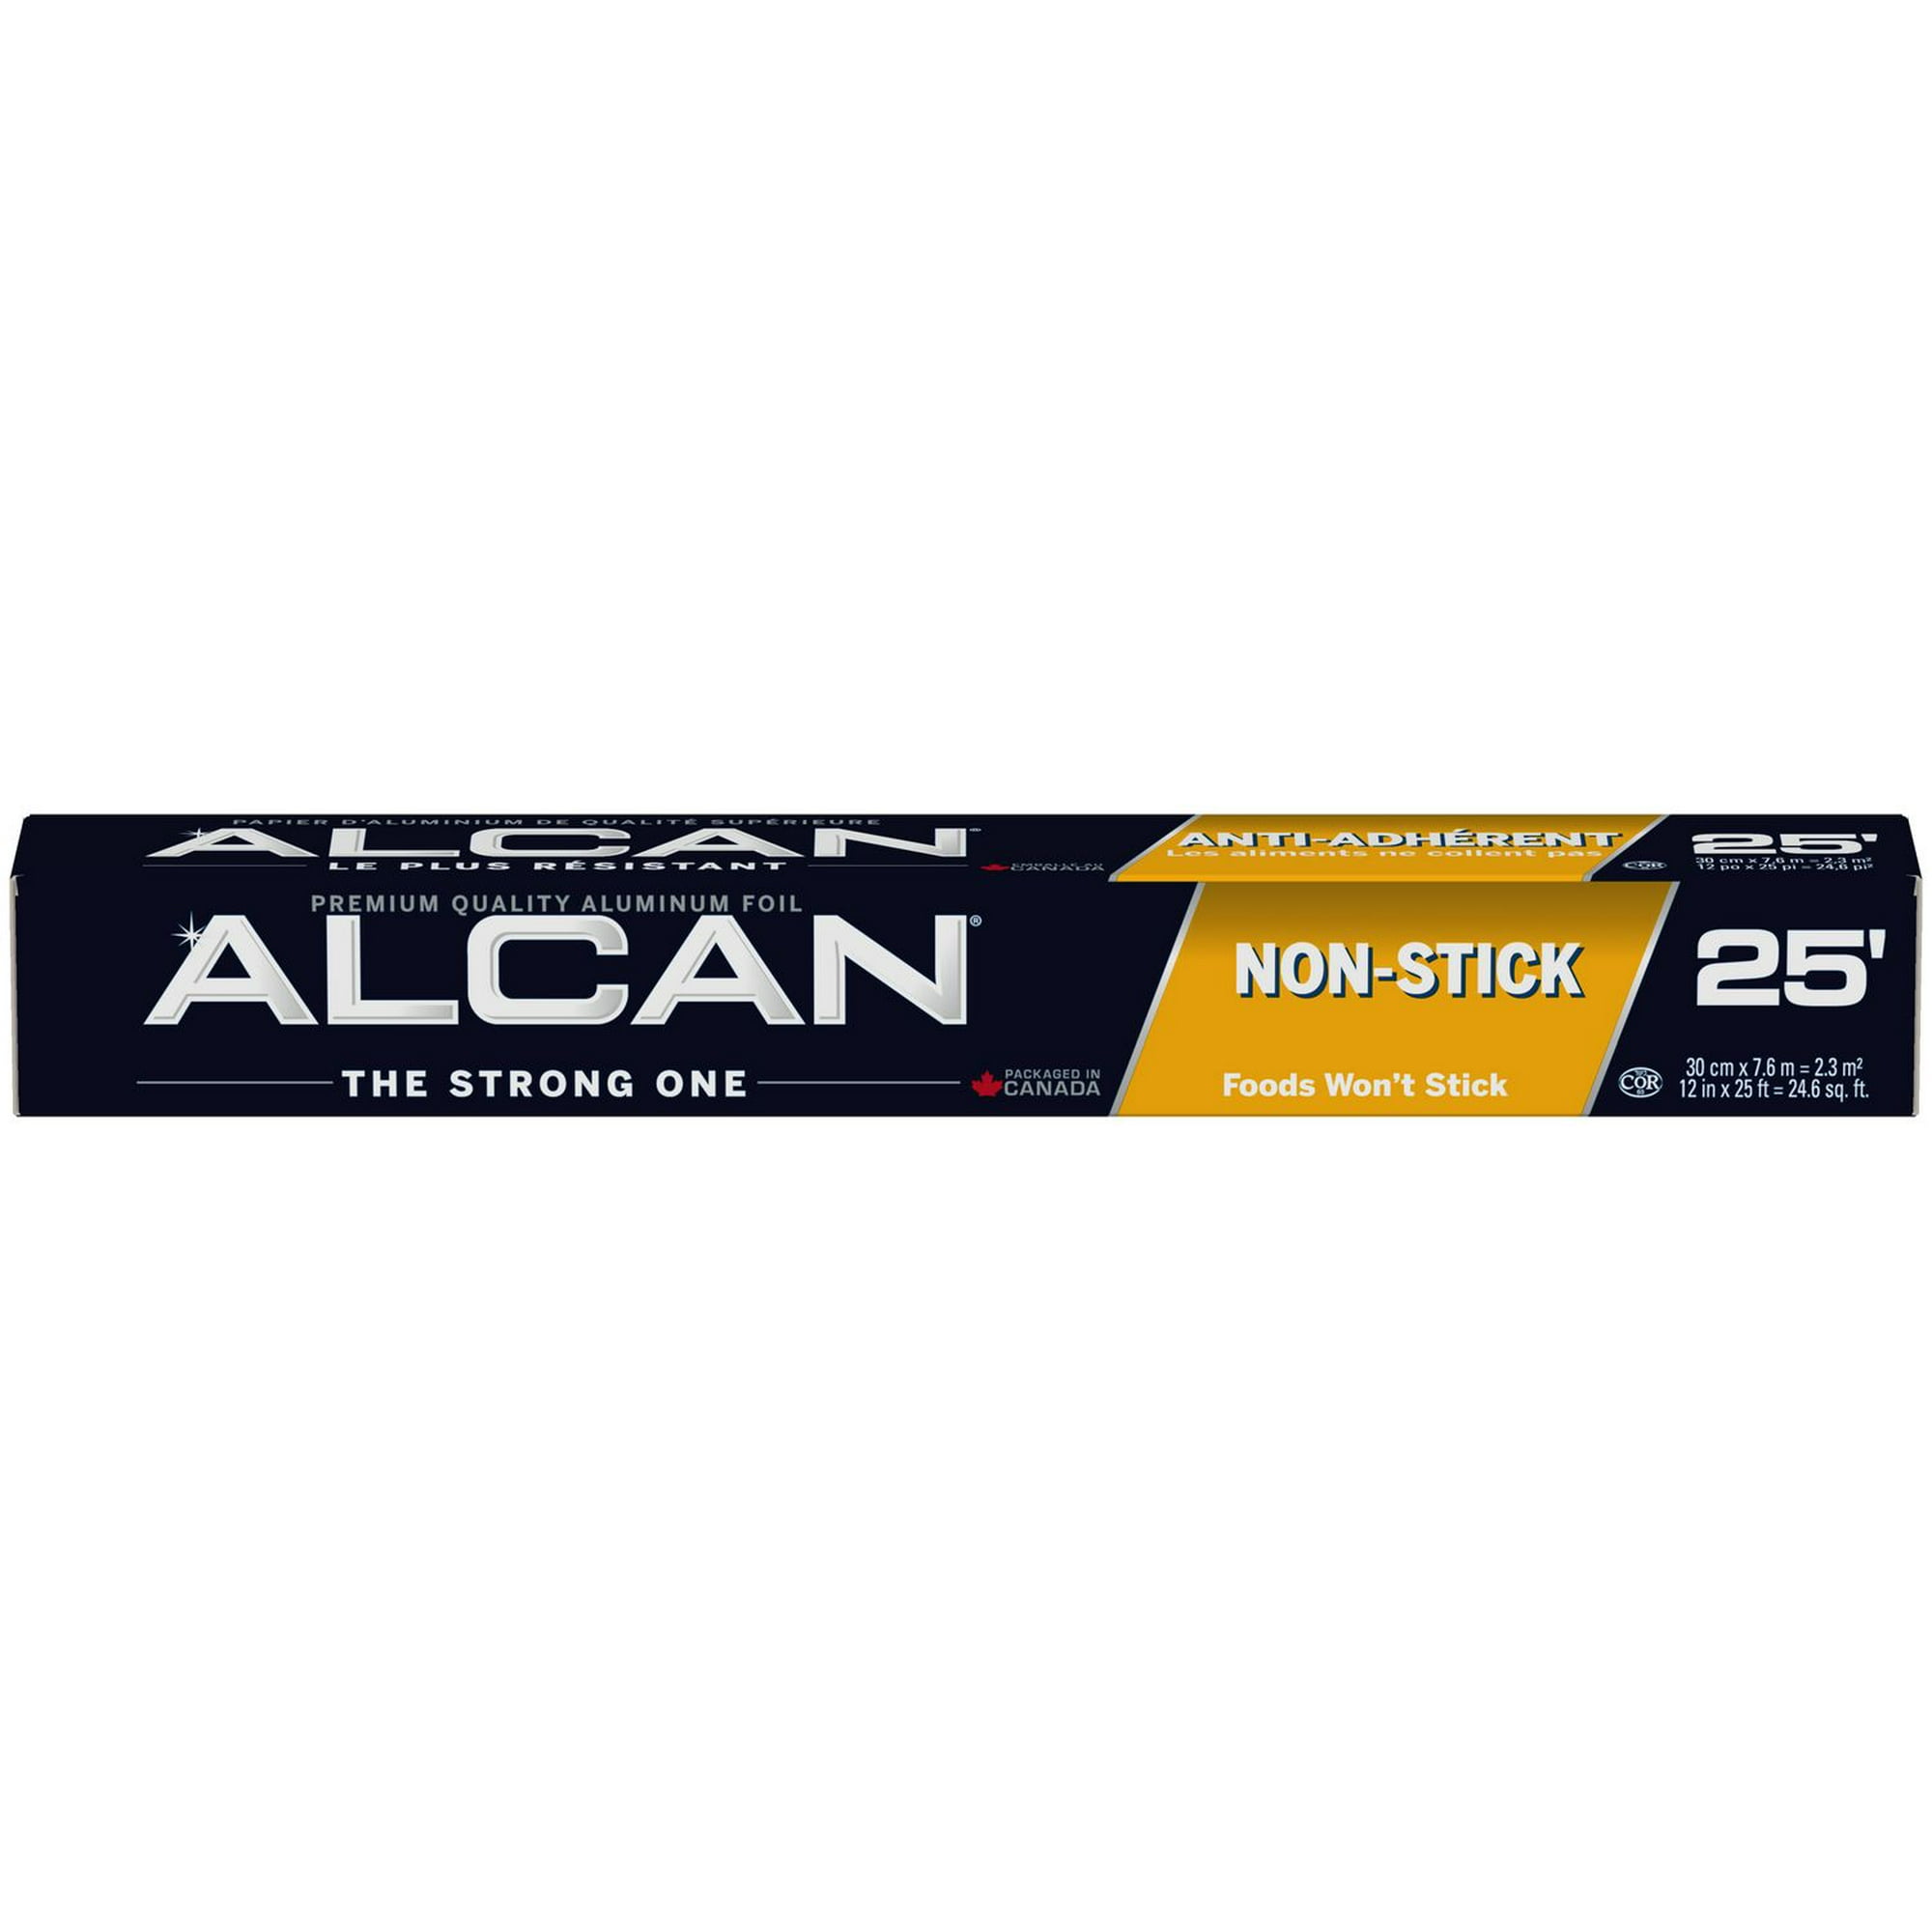 Alcan® Non-Stick Baking Foil Aluminum Foil Wrap, 12x25' 1-pack 